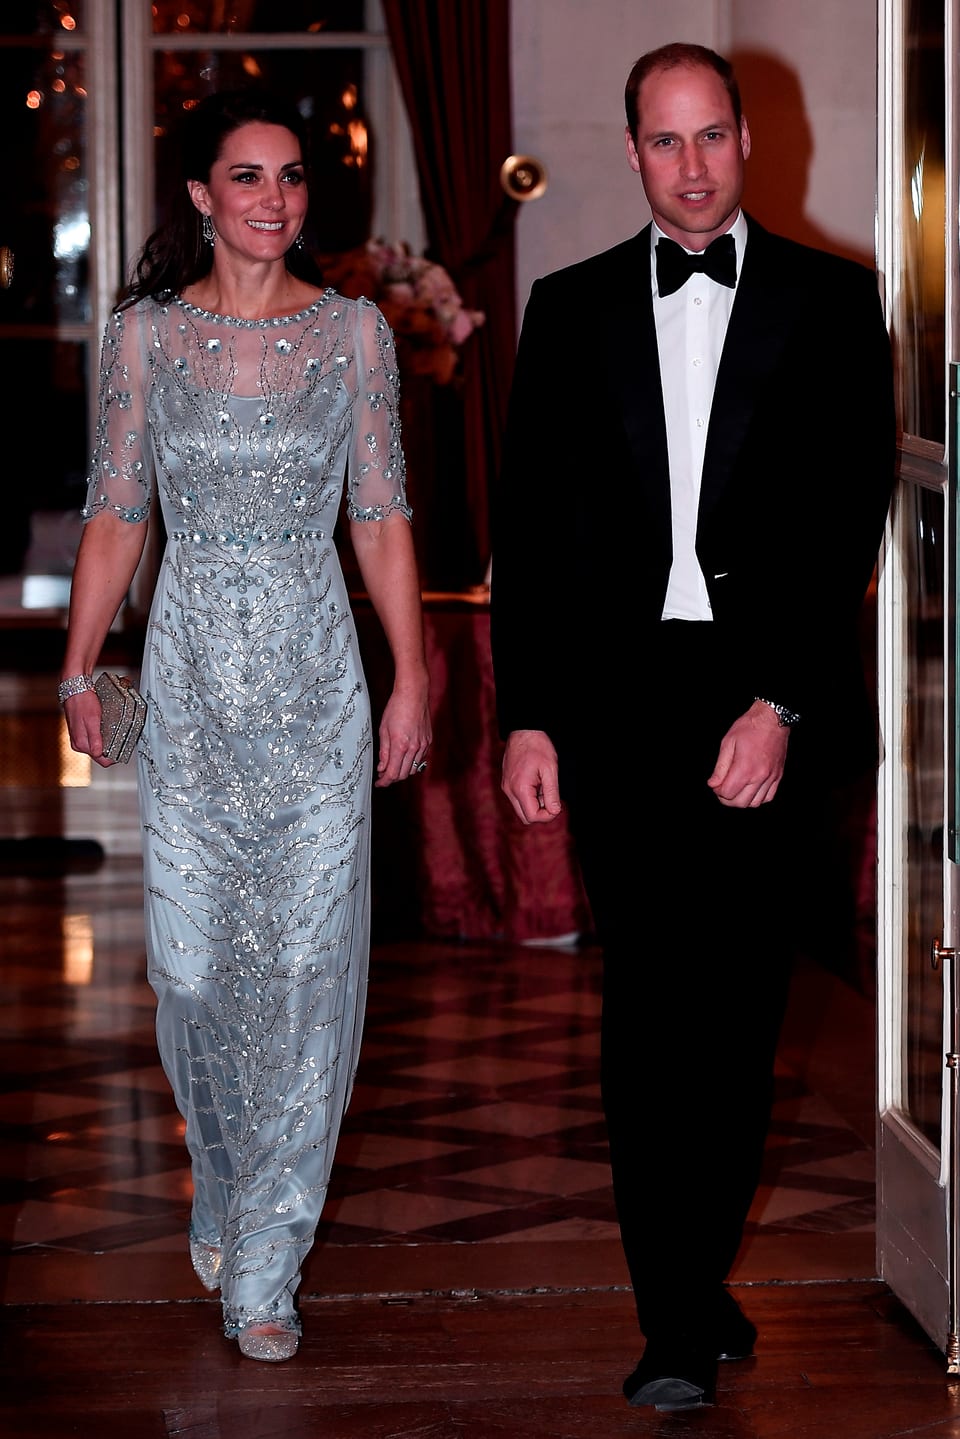 Kate in einem hellblau-silbernen Glitzerkleid und William im Anzug mit Fliege.